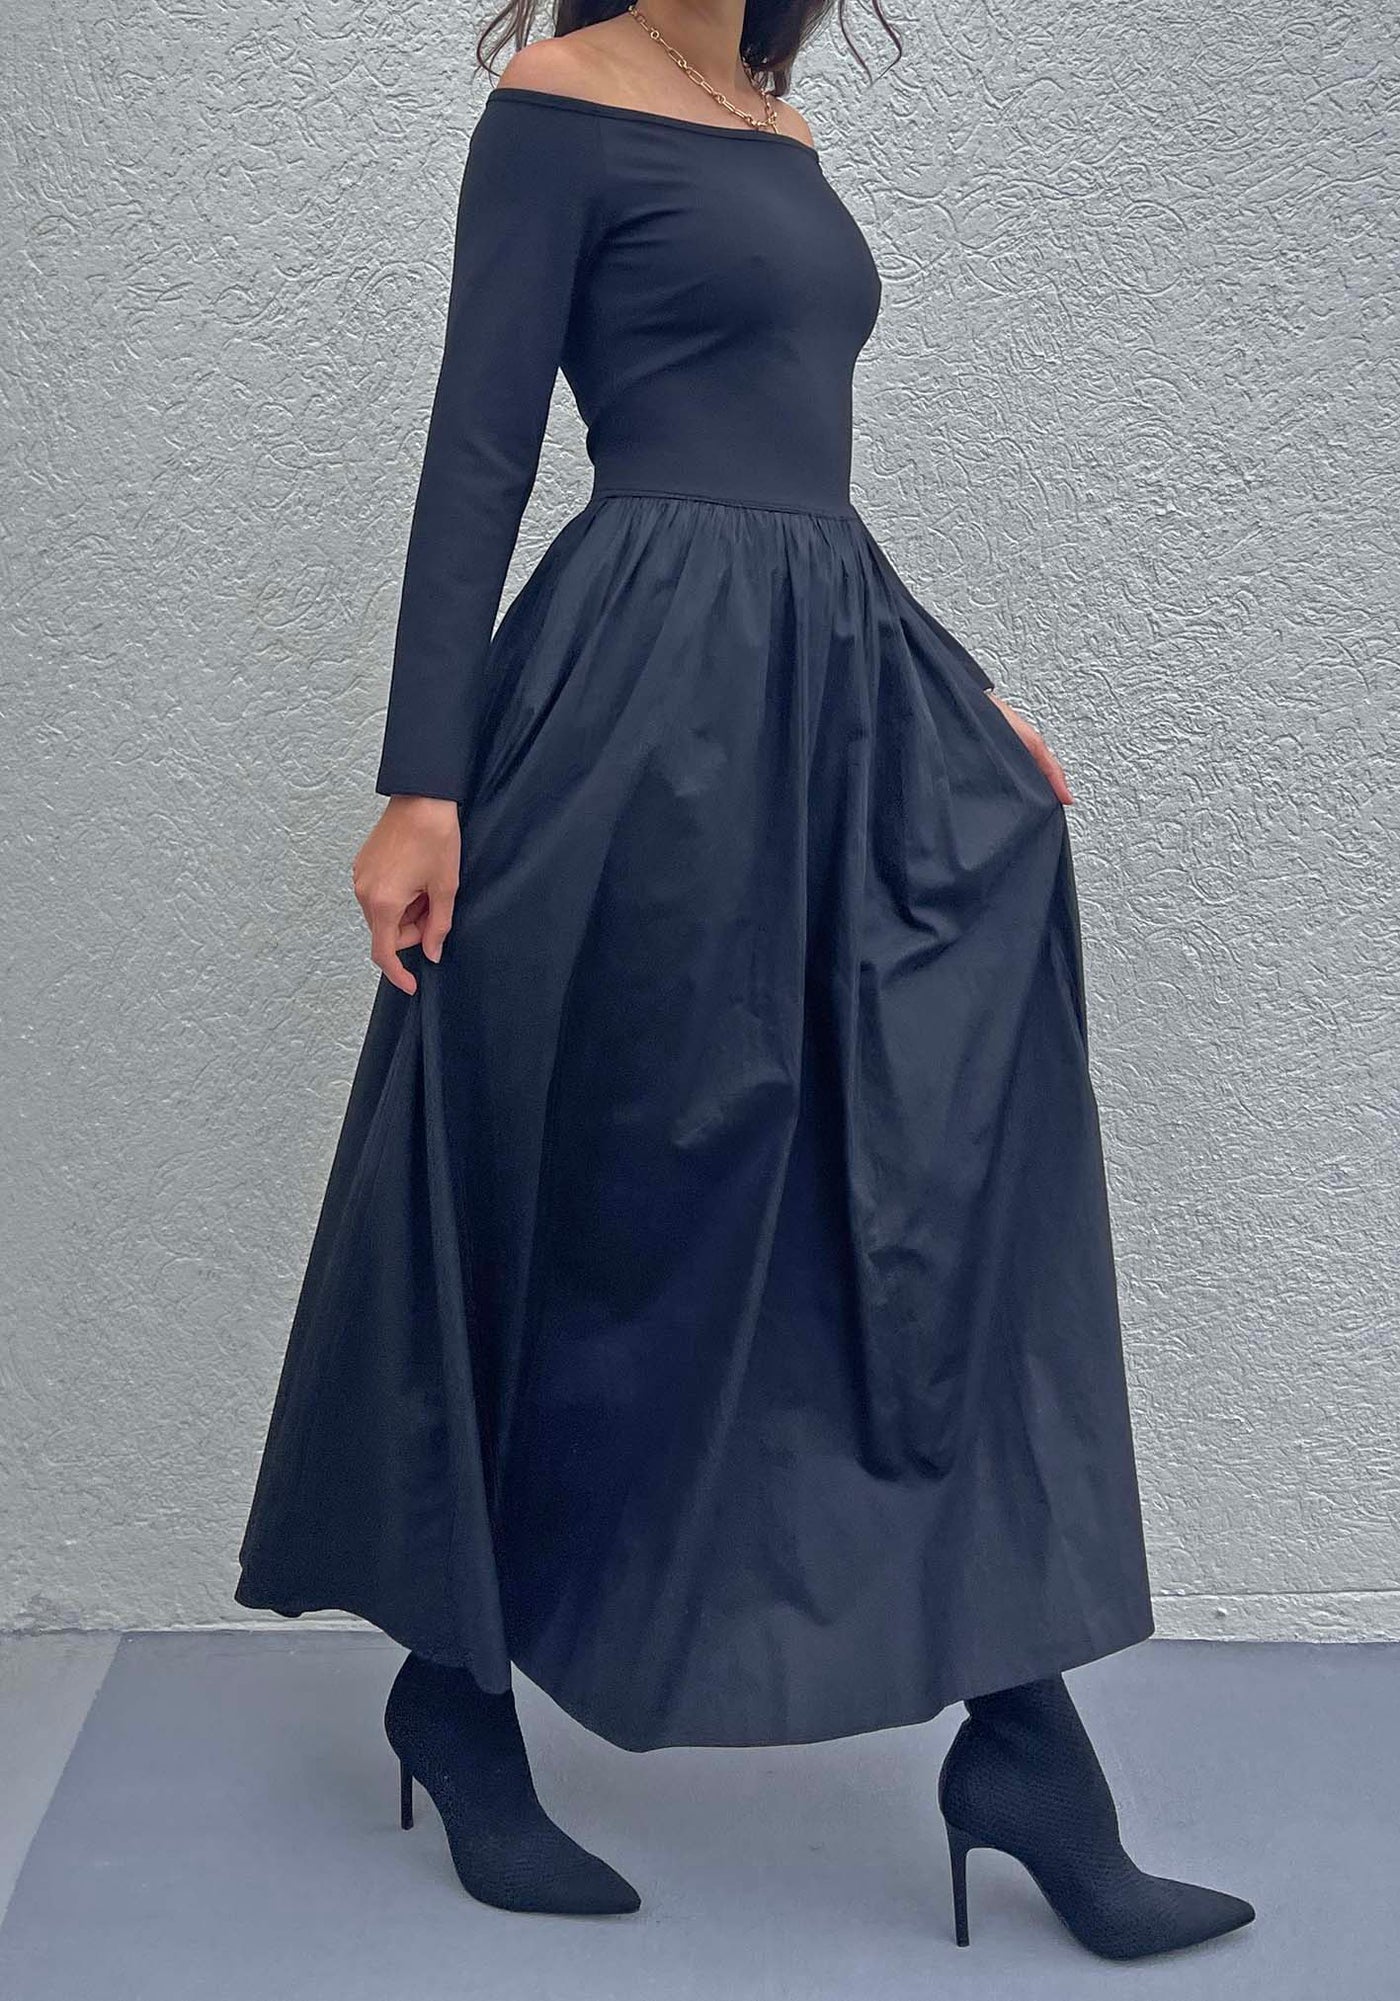 Fifth Avenue Black Maxi Dress